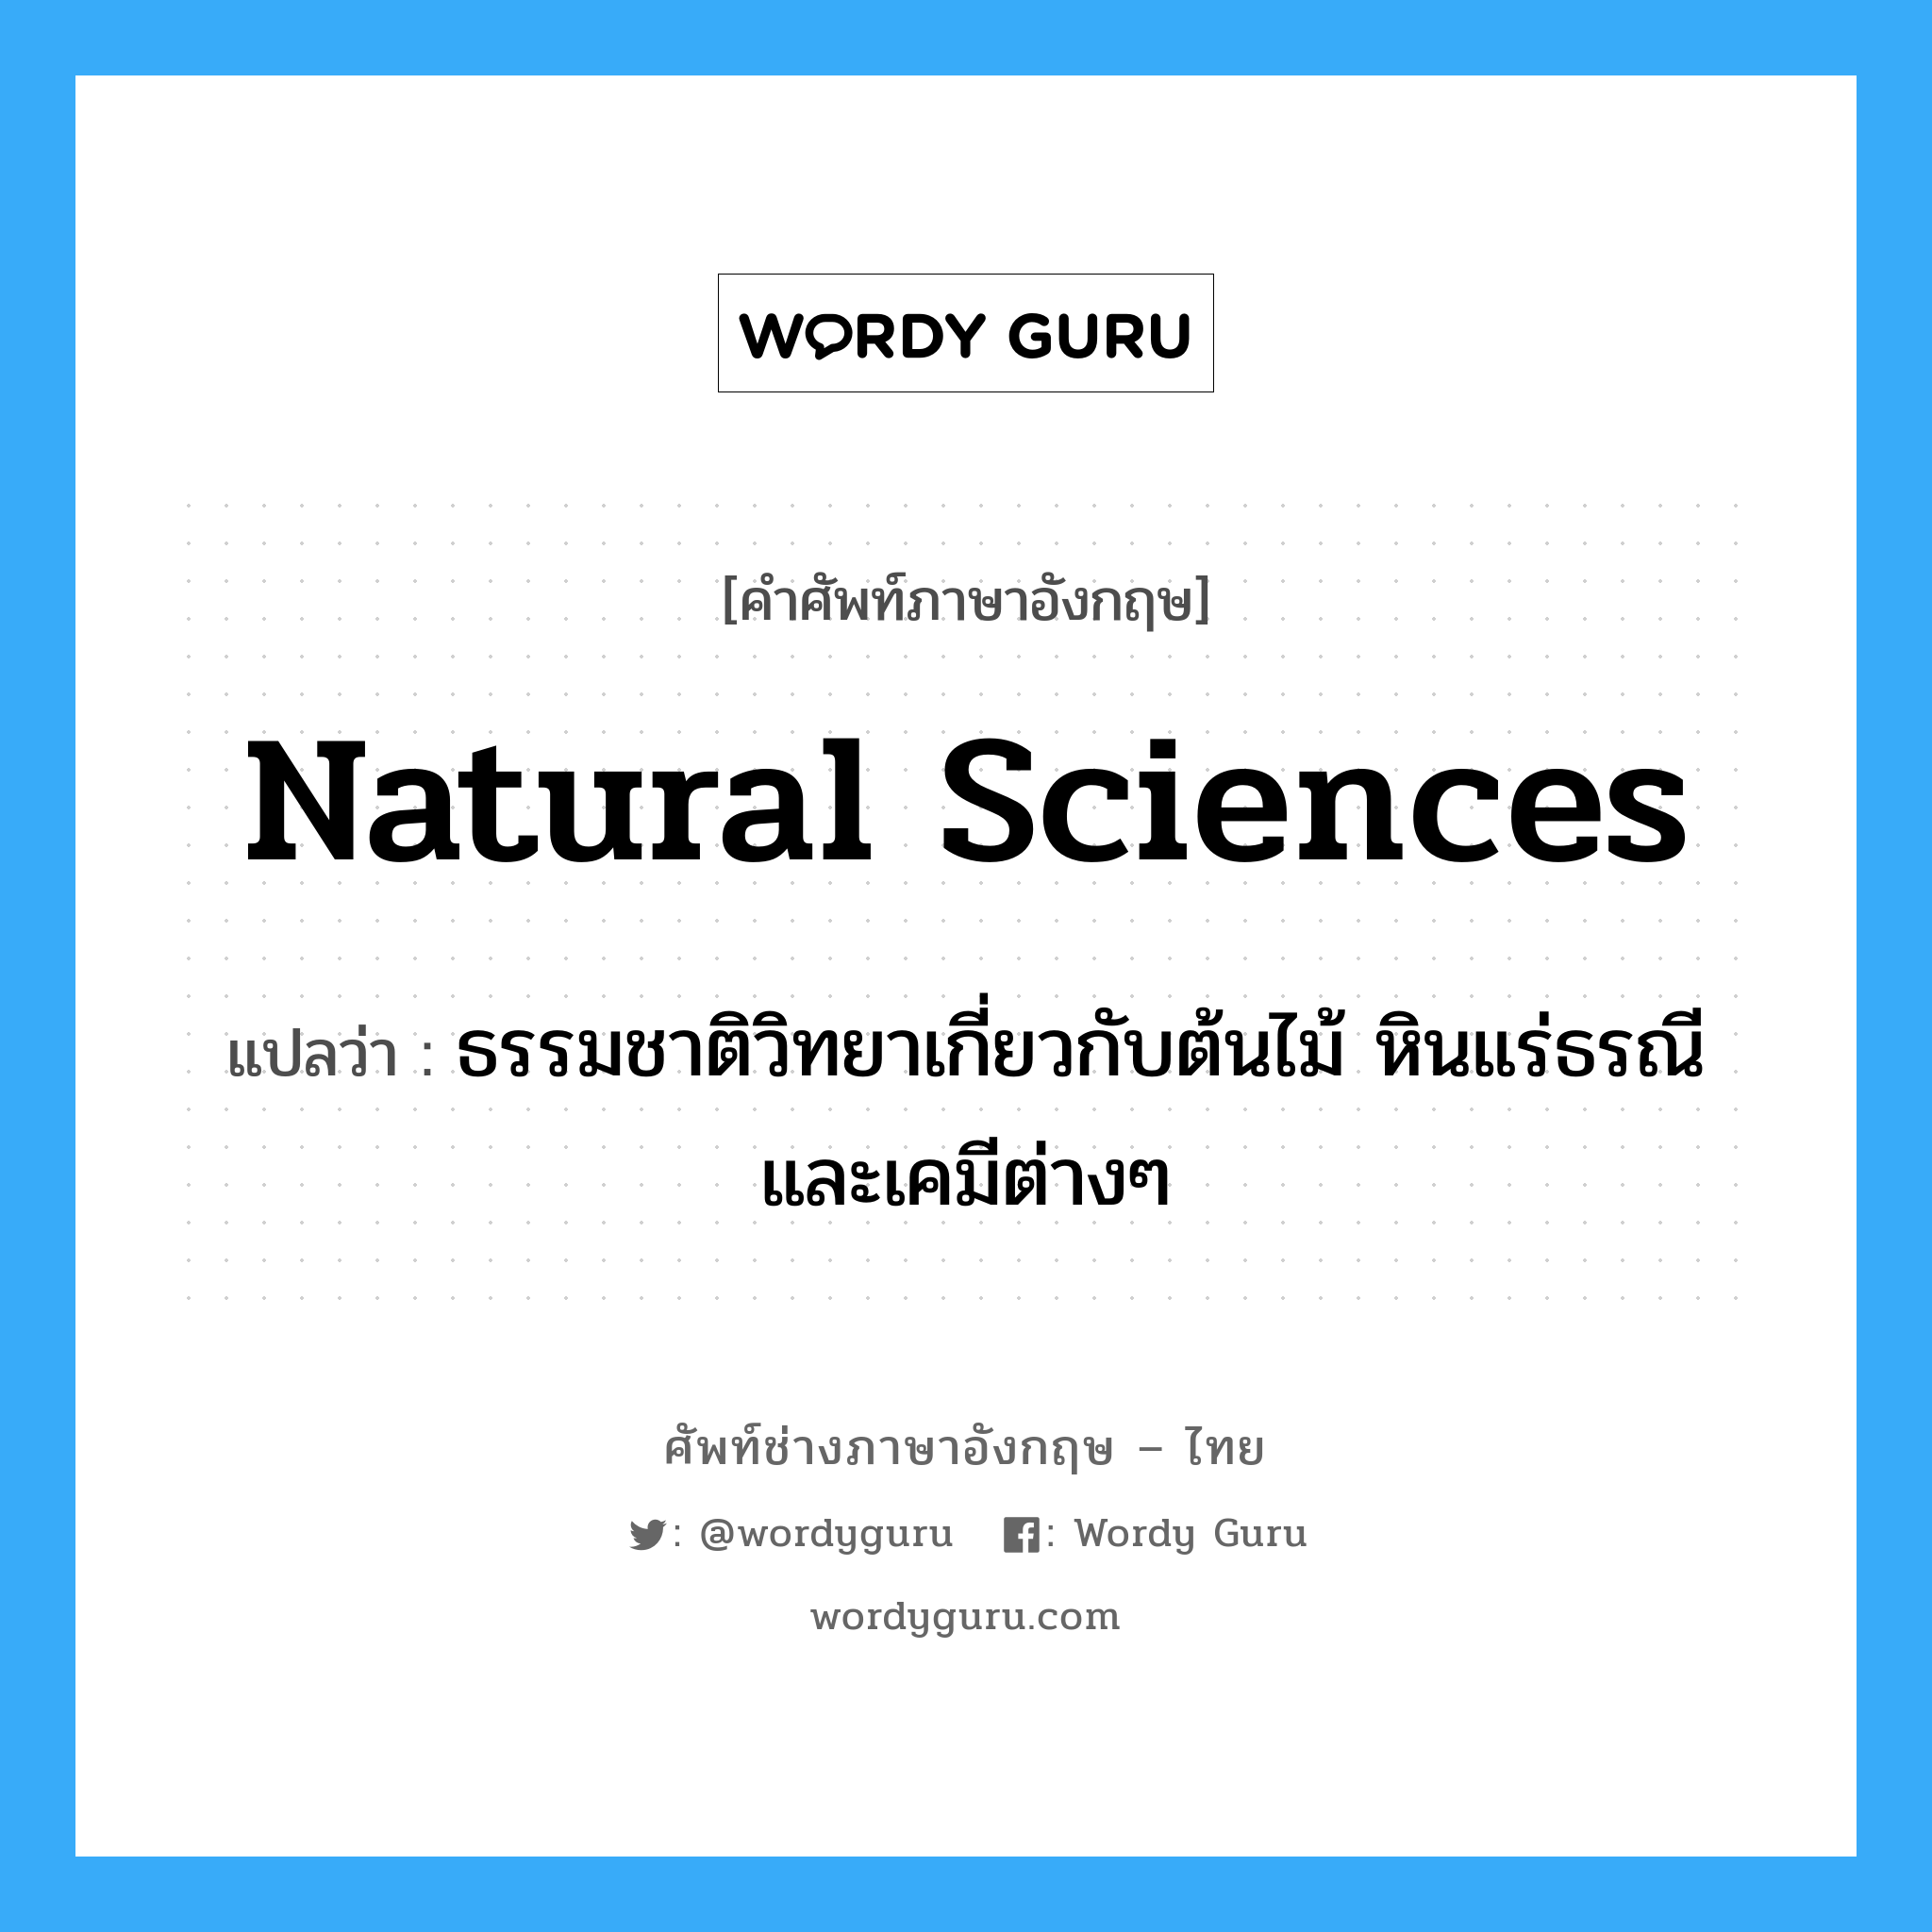 natural sciences แปลว่า?, คำศัพท์ช่างภาษาอังกฤษ - ไทย natural sciences คำศัพท์ภาษาอังกฤษ natural sciences แปลว่า ธรรมชาติวิทยาเกี่ยวกับต้นไม้ หินแร่ธรณีและเคมีต่างๆ